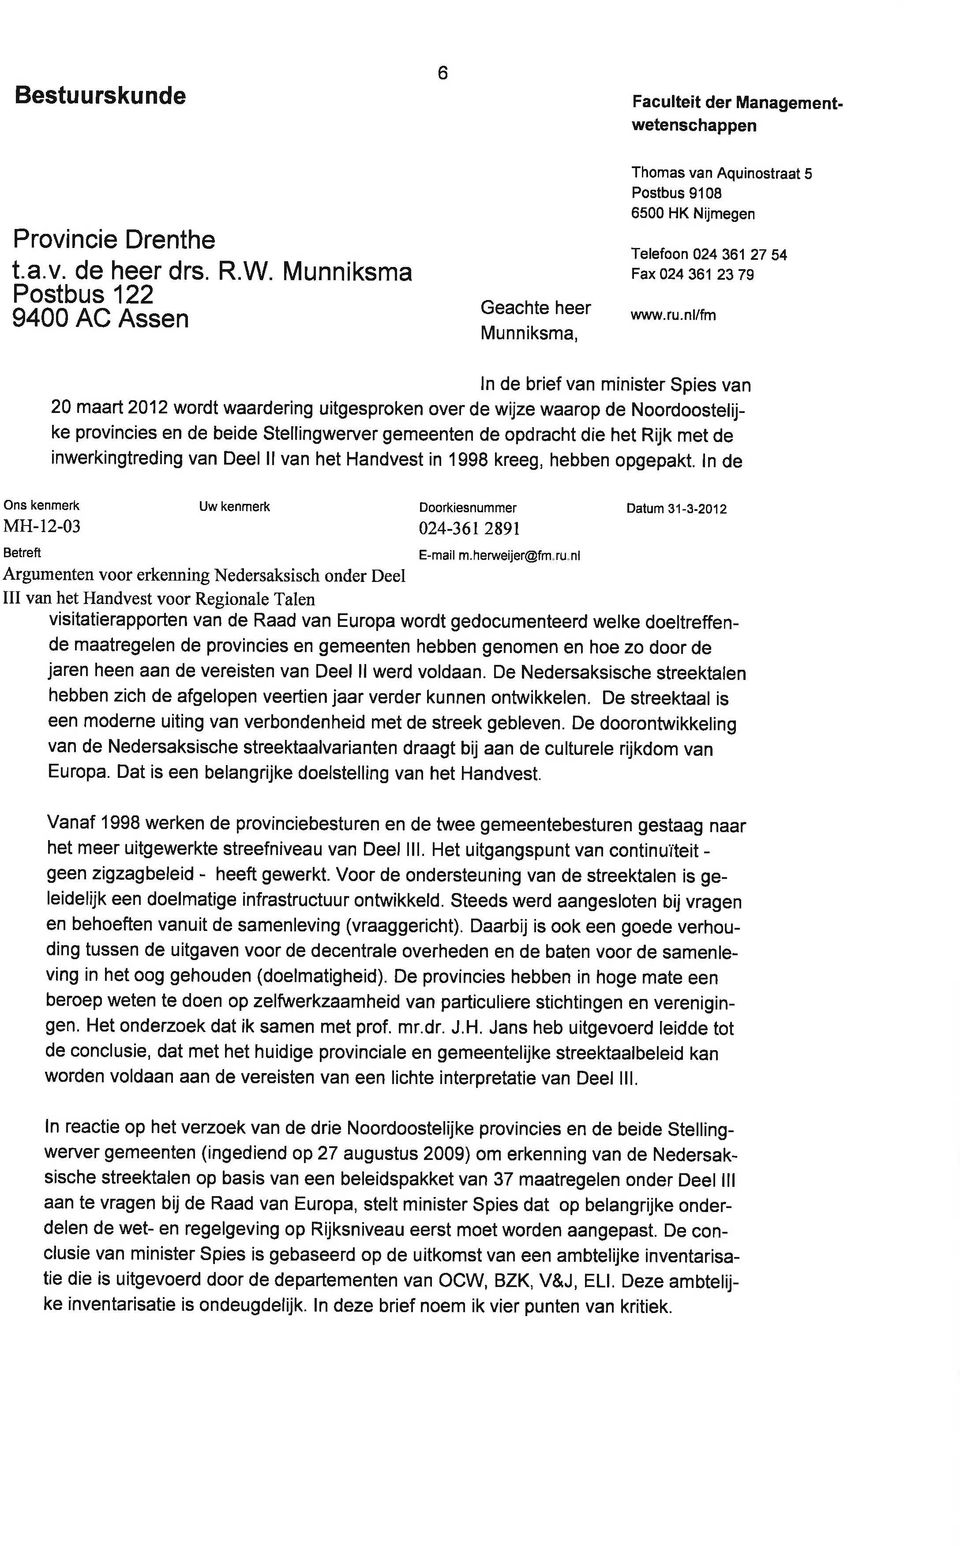 nl/fm ln de brief van minister Spies van 20 maart 2012 wordt waardering uitgesproken over de wijze waarop de Noordoostelijke provincies en de beide Stellingwerver gemeenten de opdracht die het Rijk